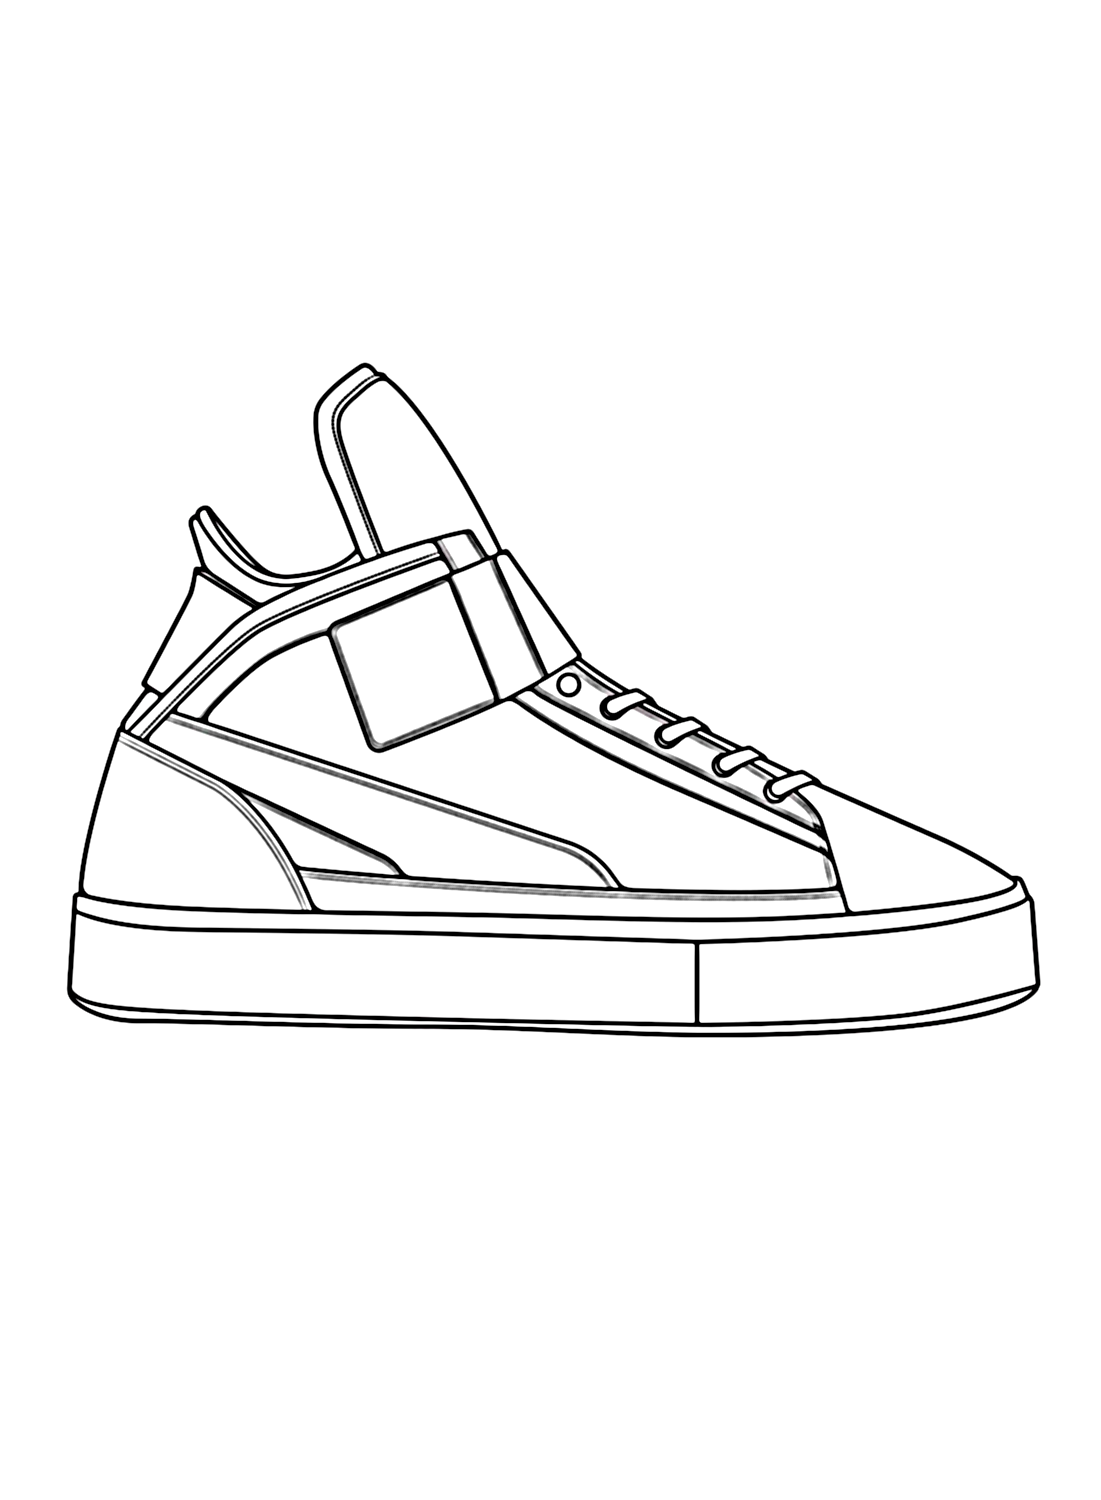 Dibujo de zapatillas para colorear de Shoe